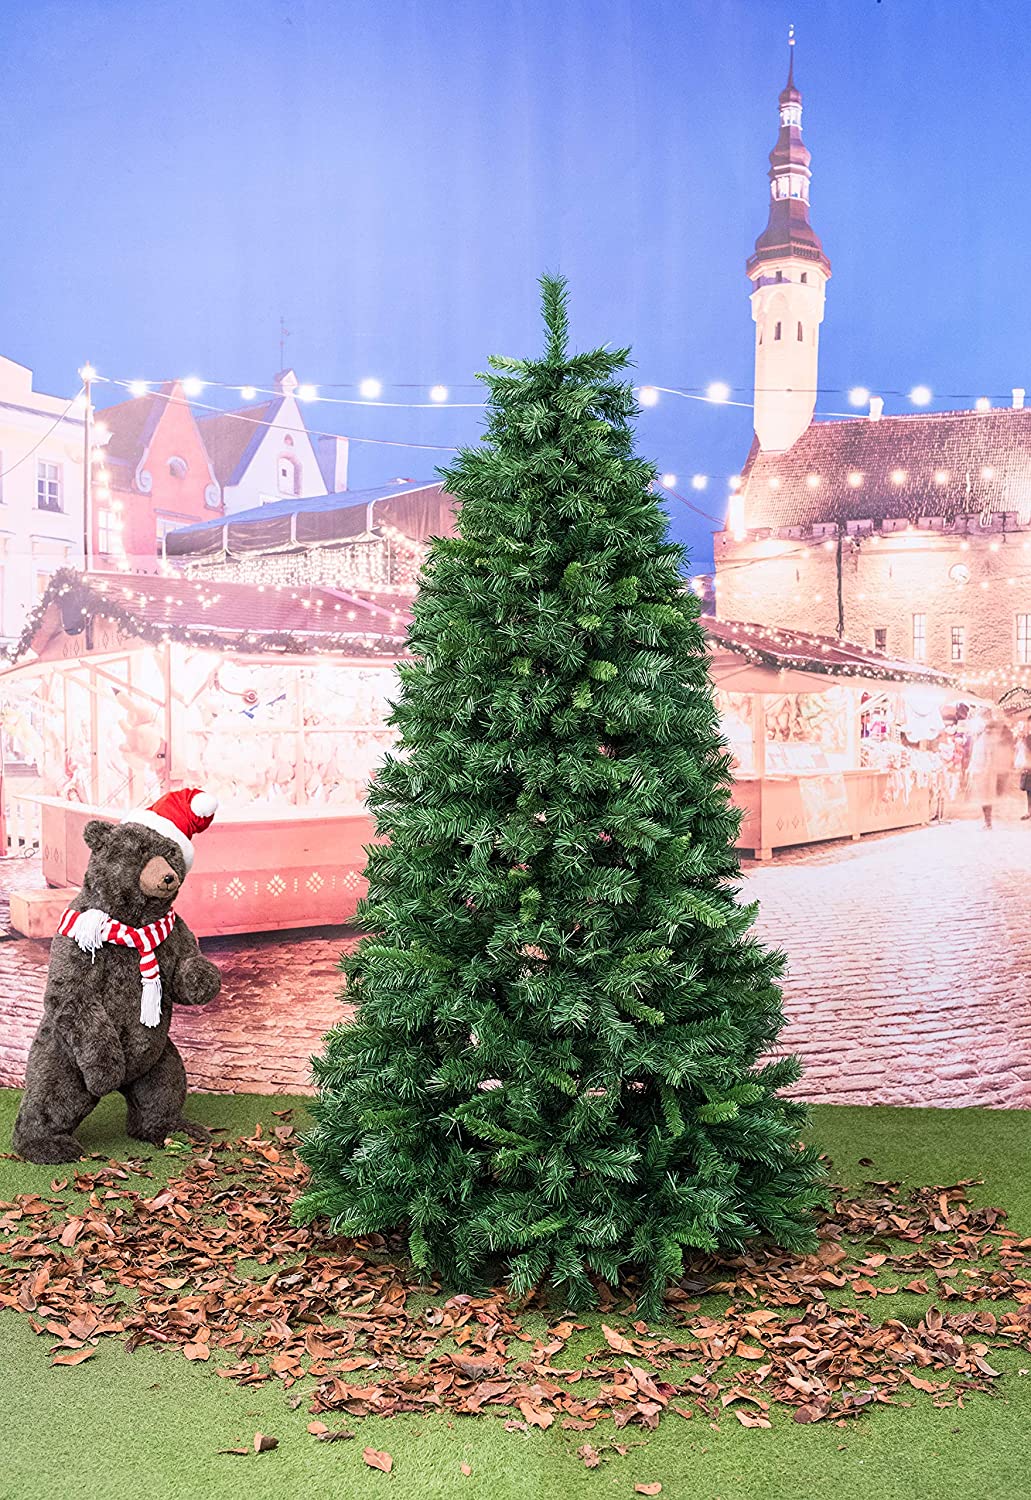 Albero di Natale innevato slim Royal 240 cm